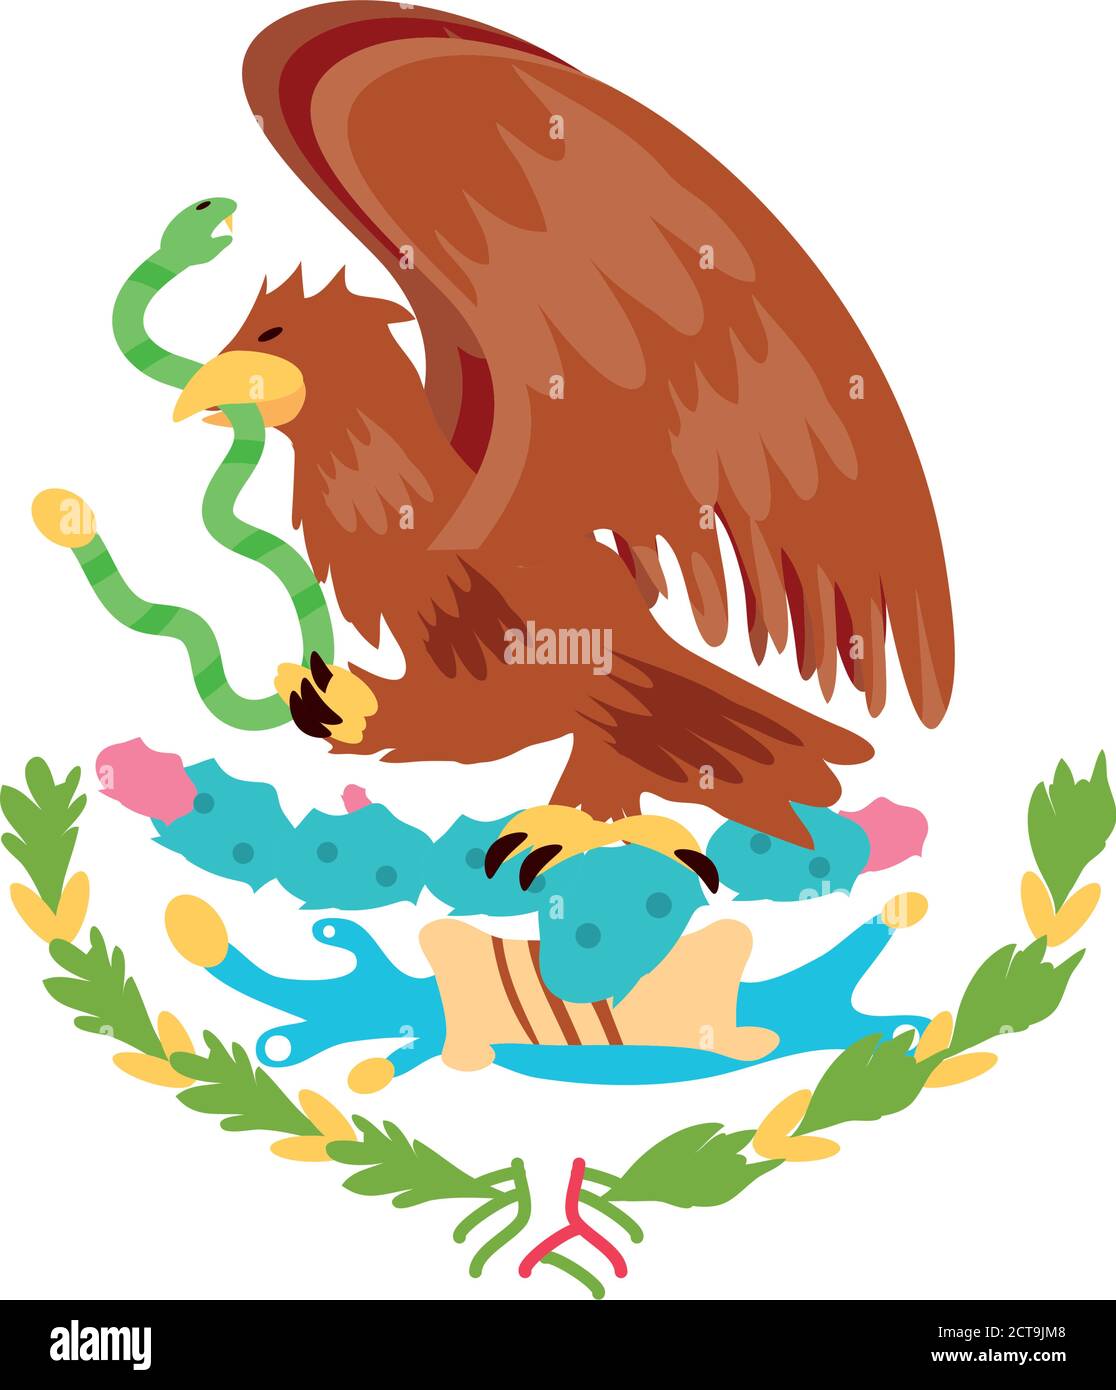 Aguila mexicana Imágenes vectoriales de stock - Alamy